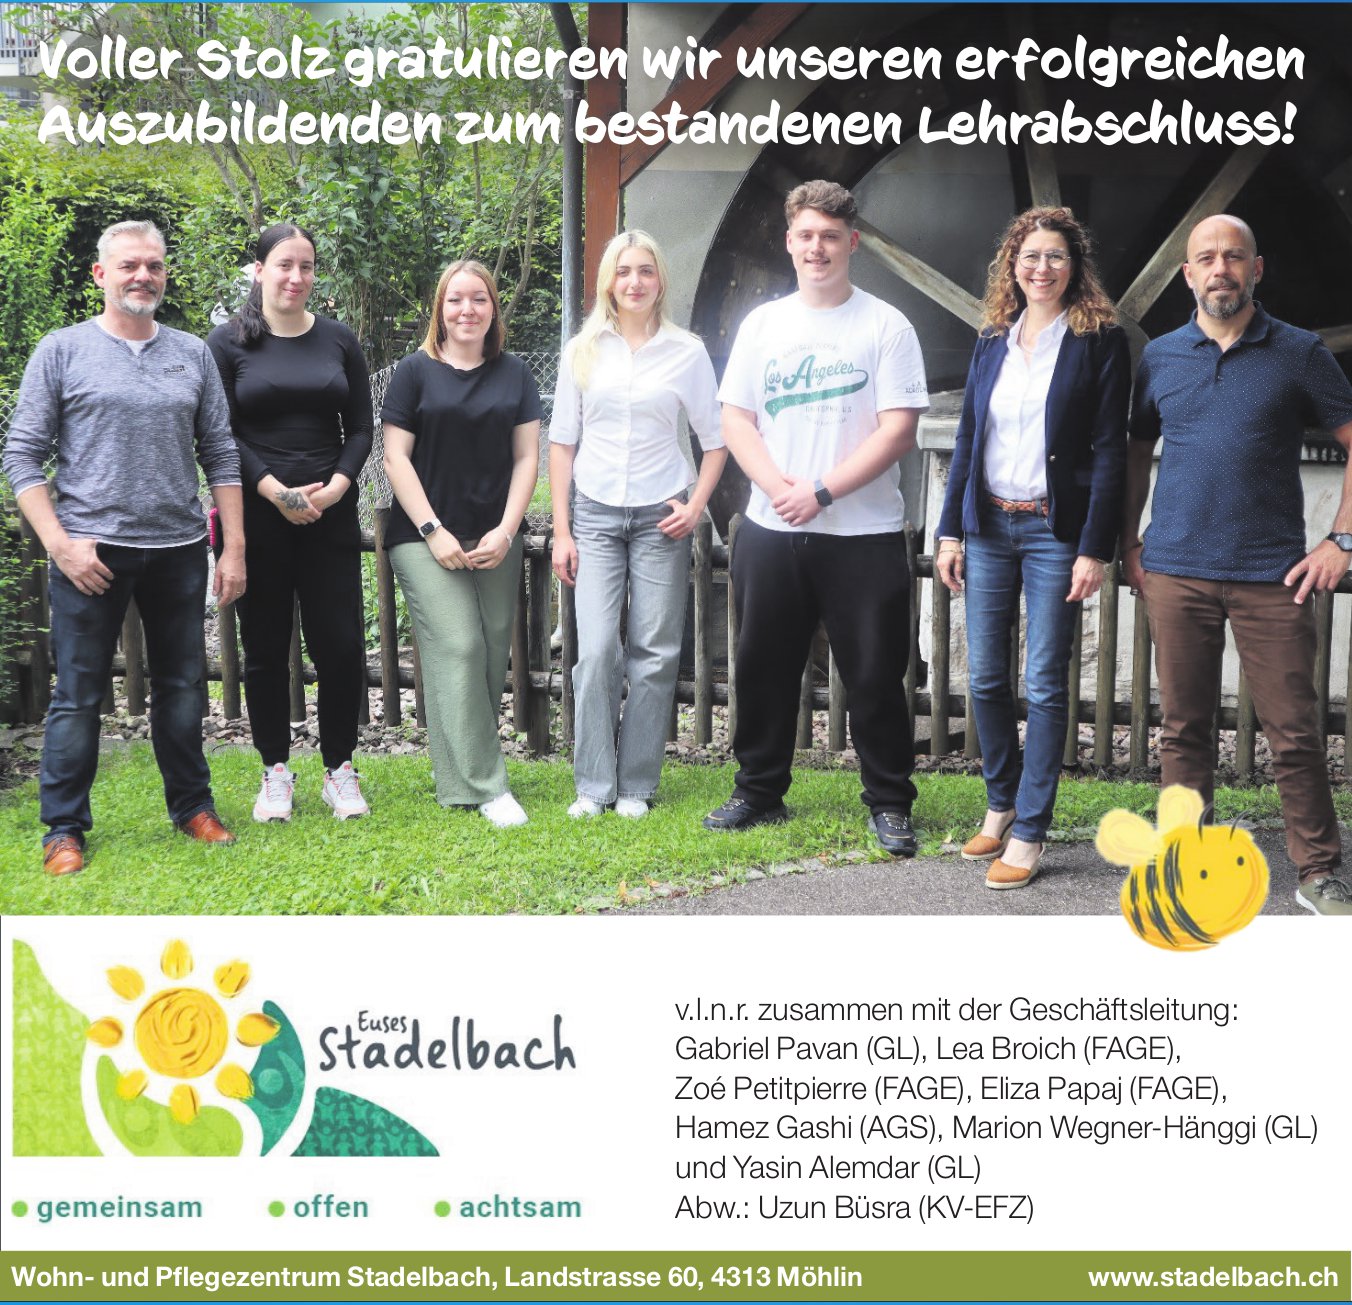 Wohn- und Pflegezentrum Stadelbach, Möhlin - Voller Stolz gratulieren wir unseren erfolgreichen Auszubildenden zum bestandenen Lehrabschluss